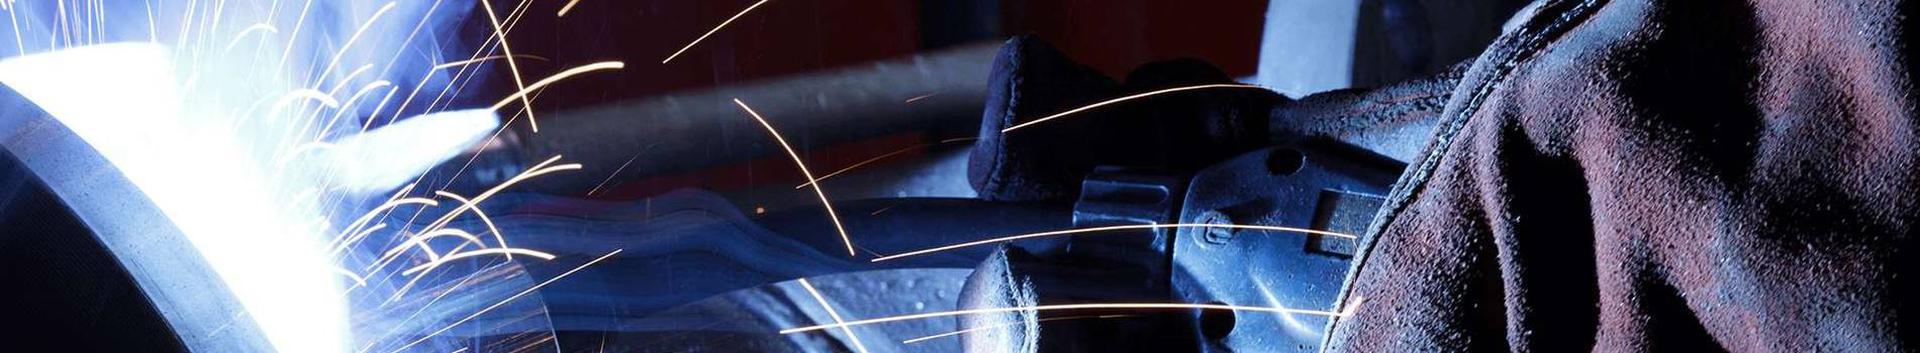 Suurim mainega ettevõte GERMETTO OÜ, maineskoor 490, aktiivseid äriseoseid 1. Tegutseb peamiselt valdkonnas: Metalltoodete tootmine.